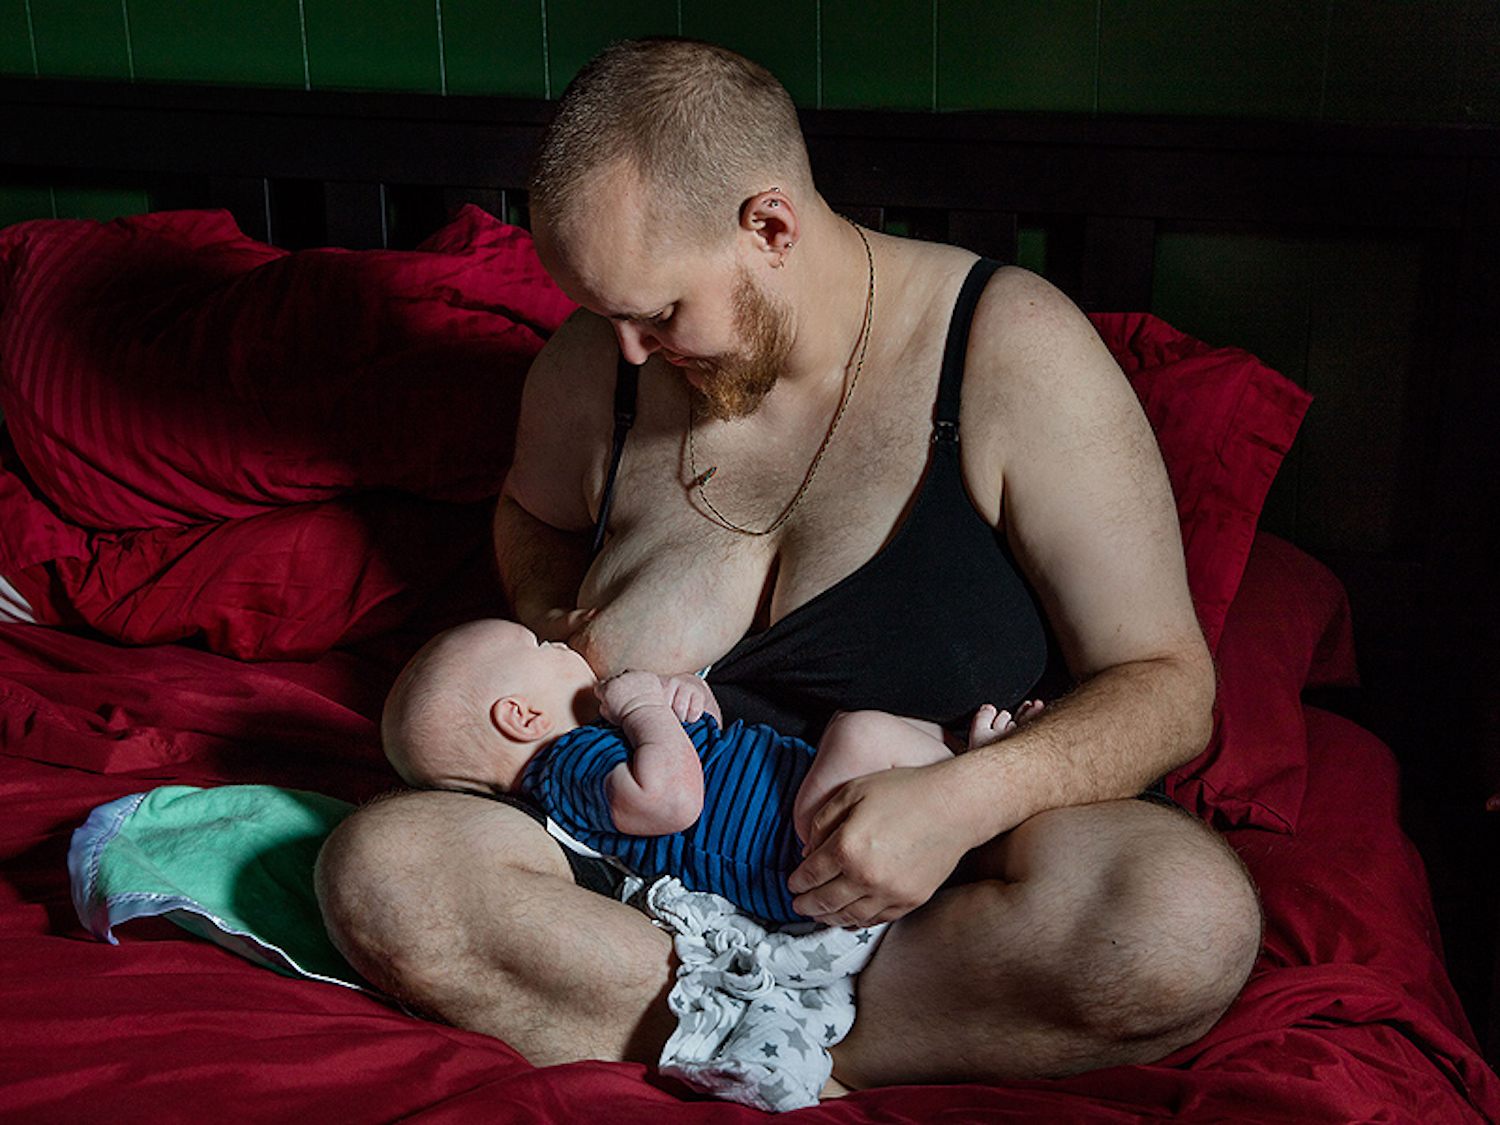 Breastfeeding daddy